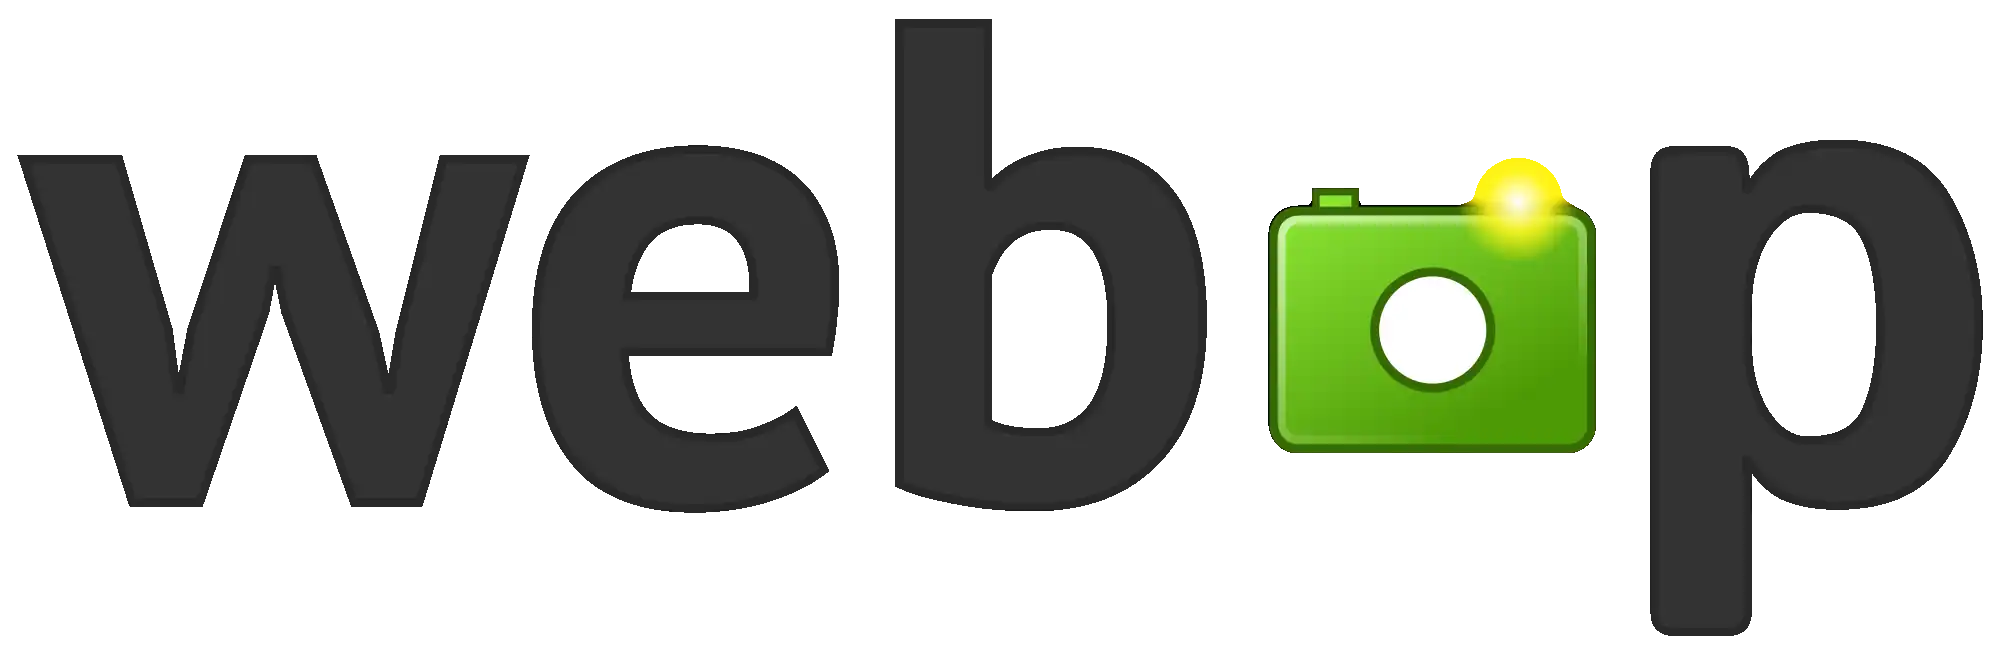 WebP filetype logo